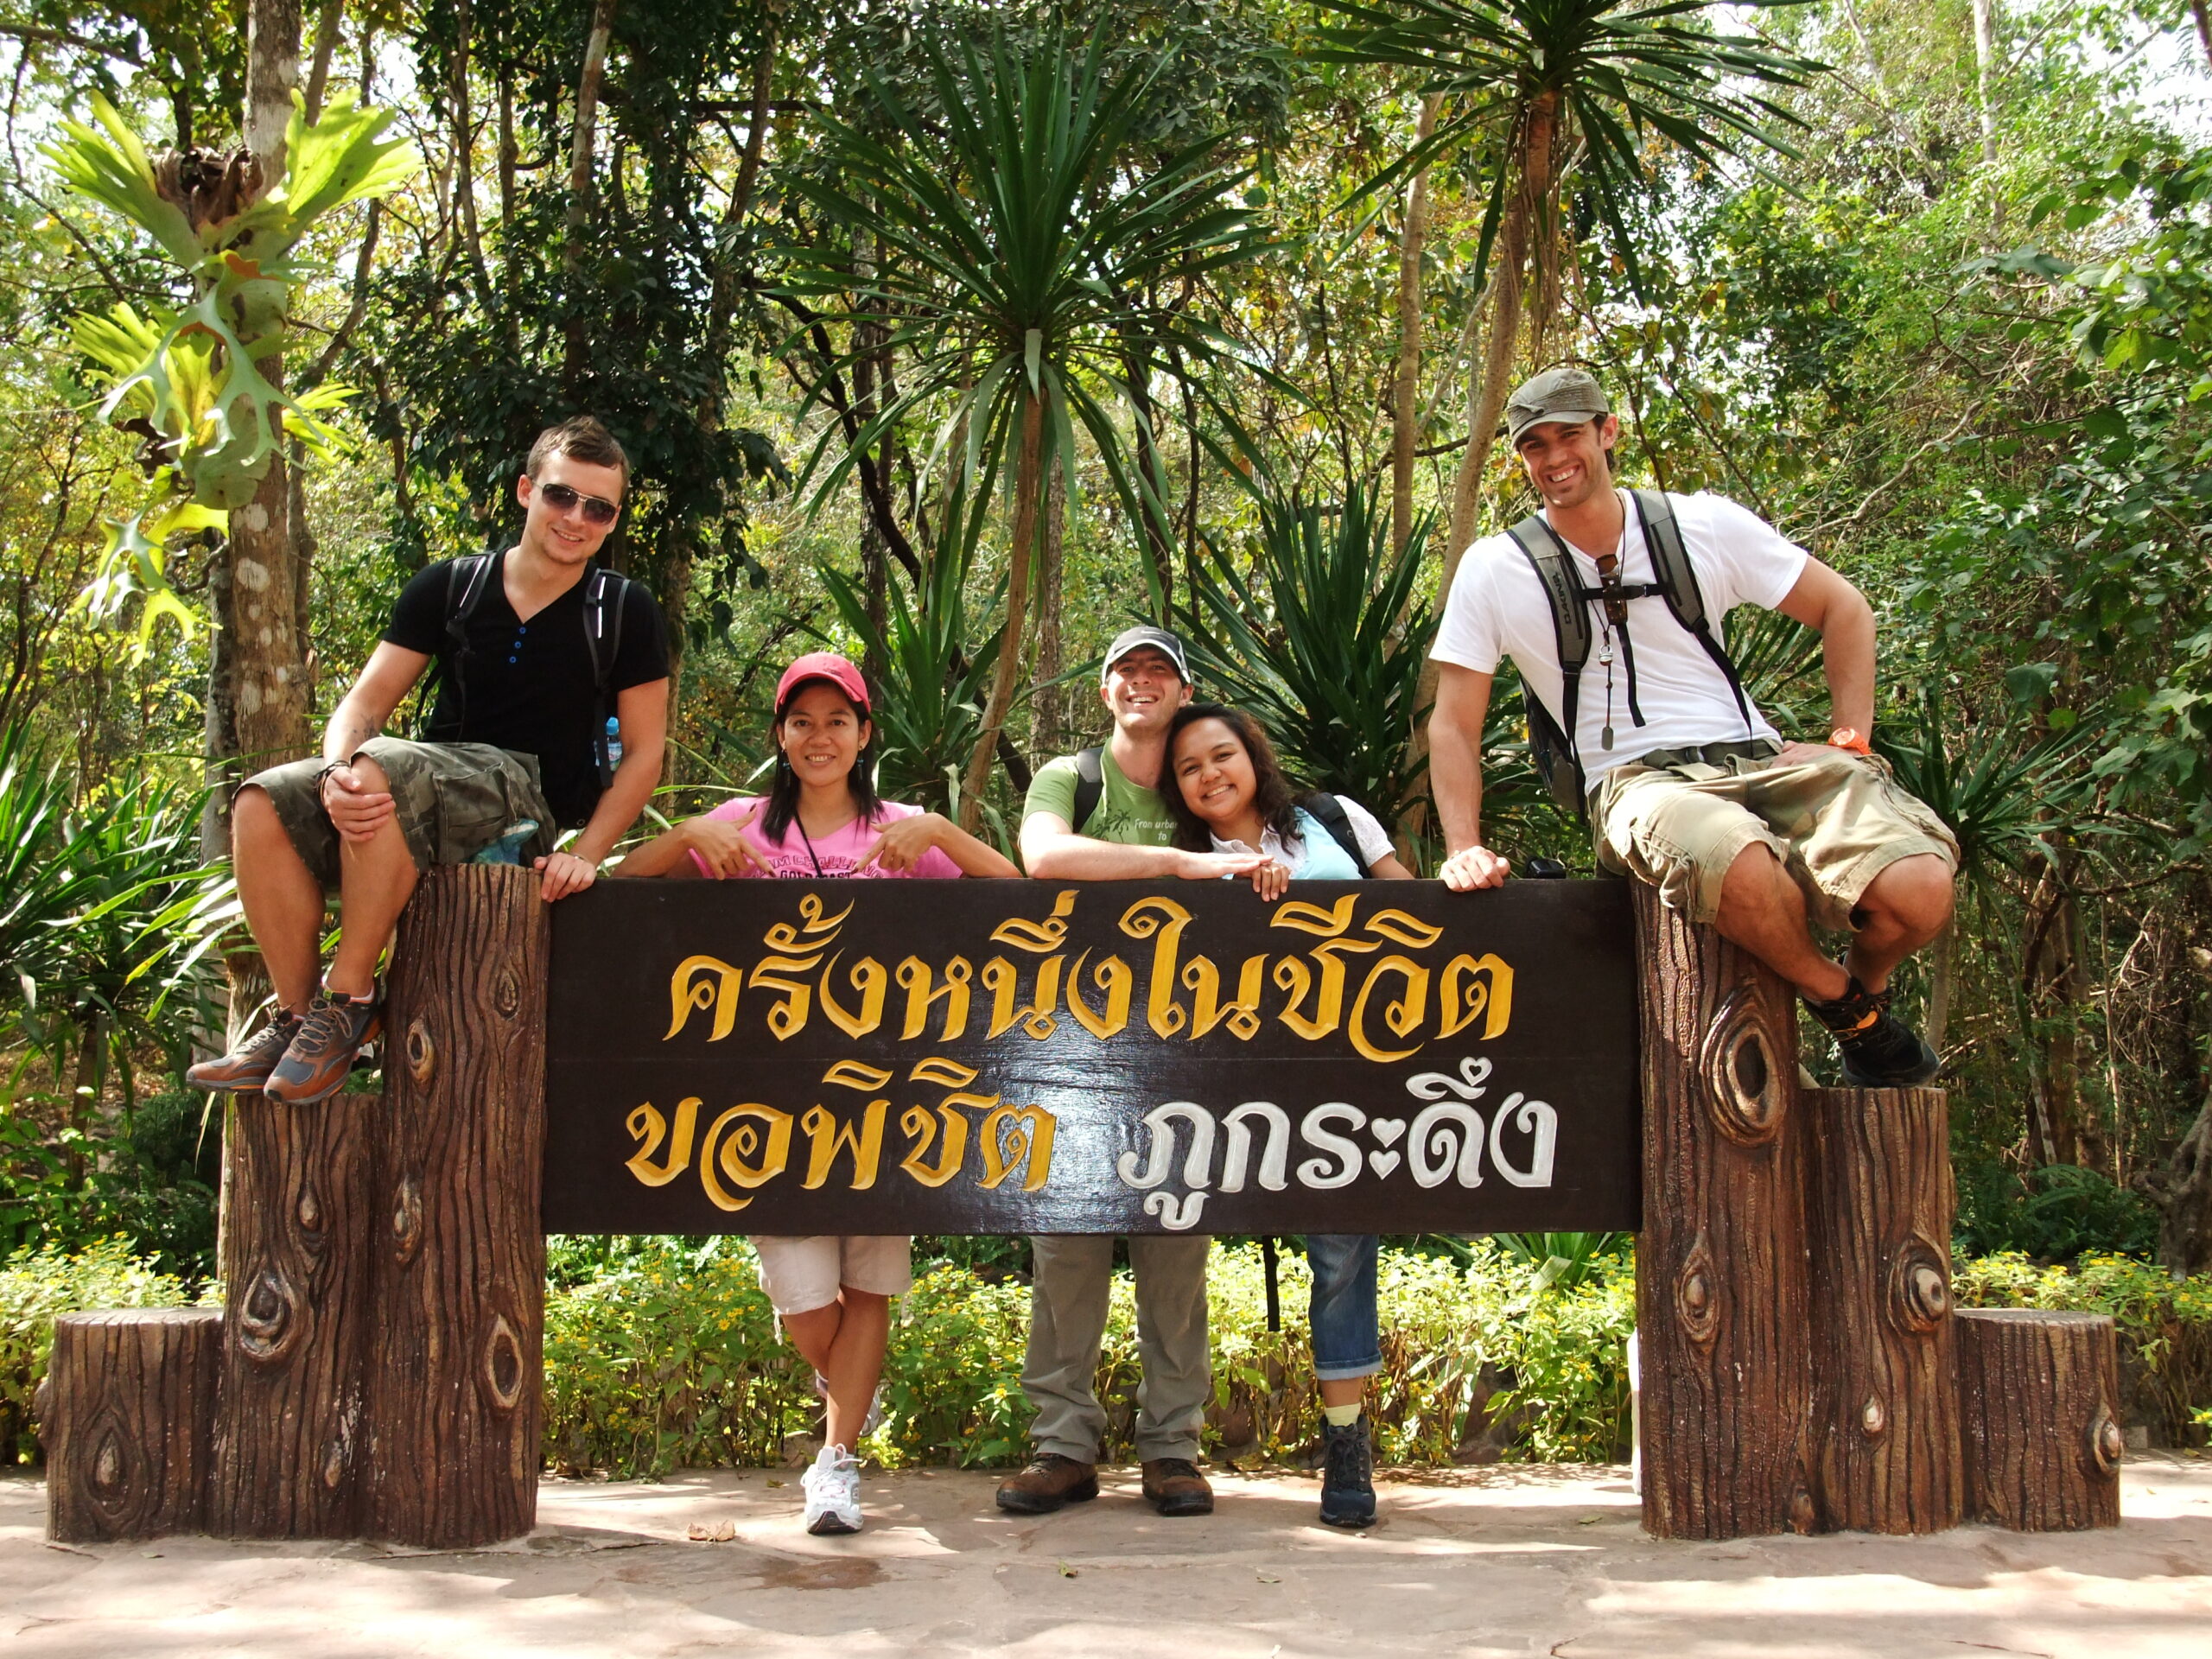 Sign at Phu Kradueng National Park Thailand